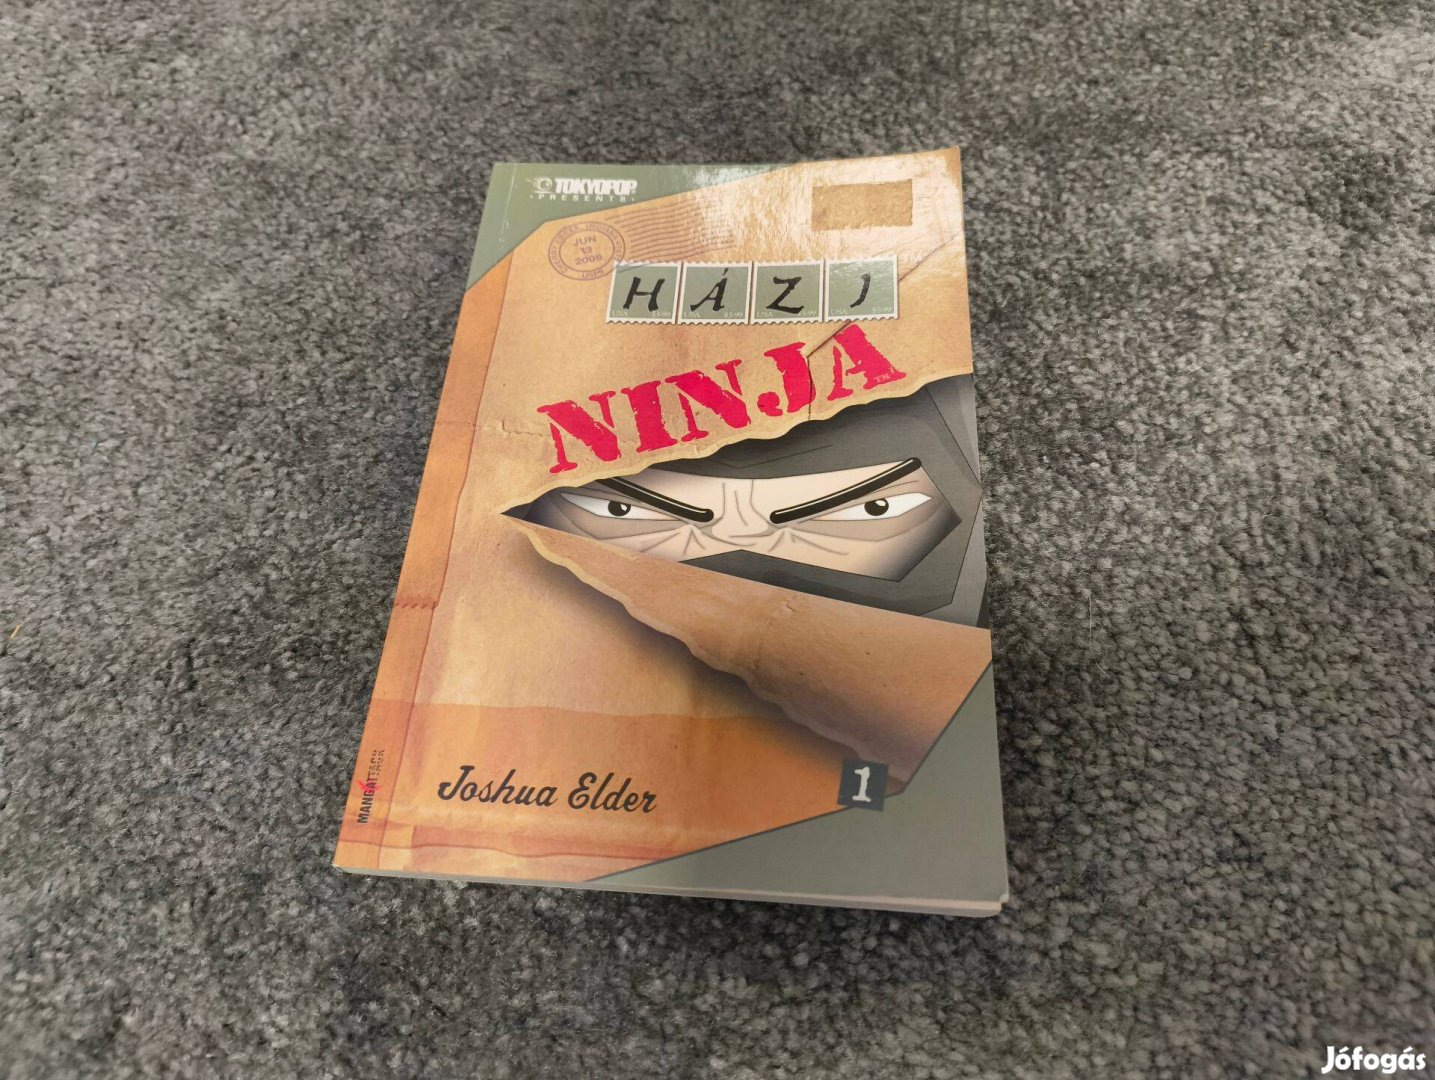 Házi ninja manga